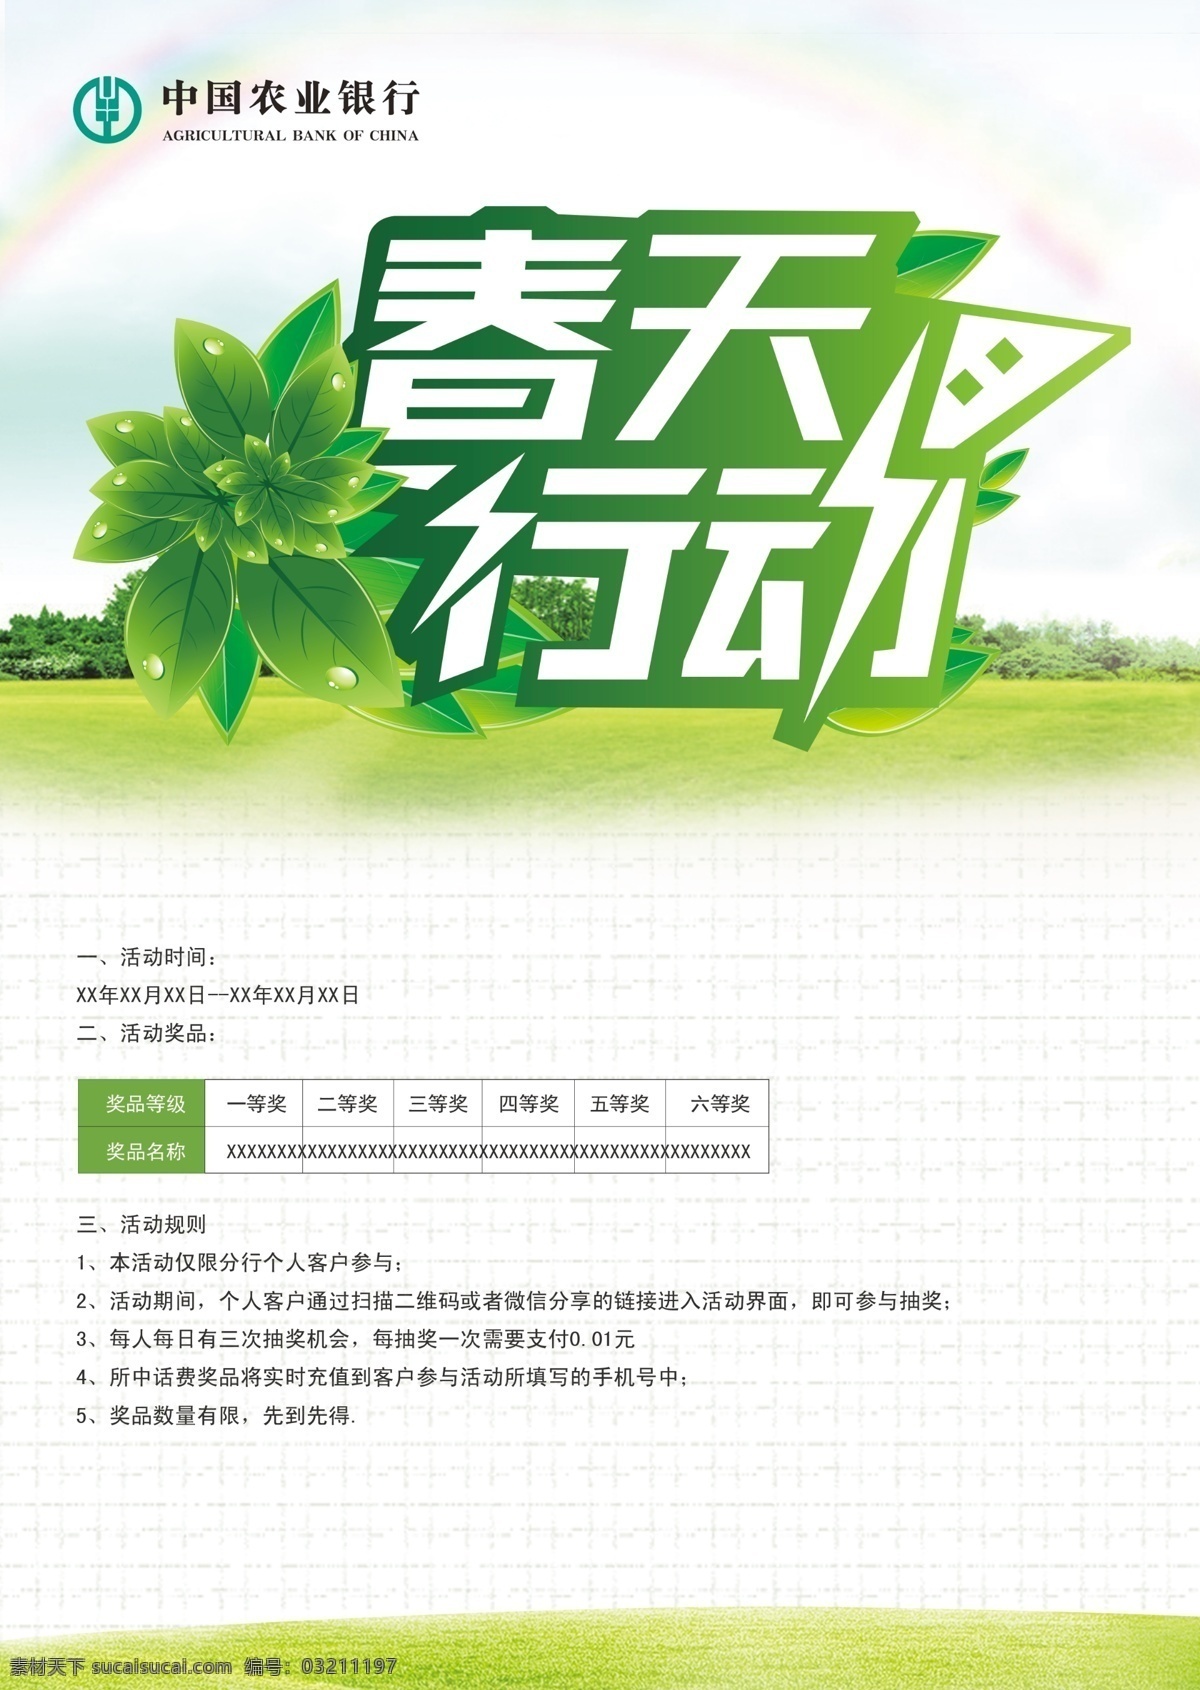 农业银行 春天 行动 中国农业银行 春天行动 抽奖 绿色背景 白色